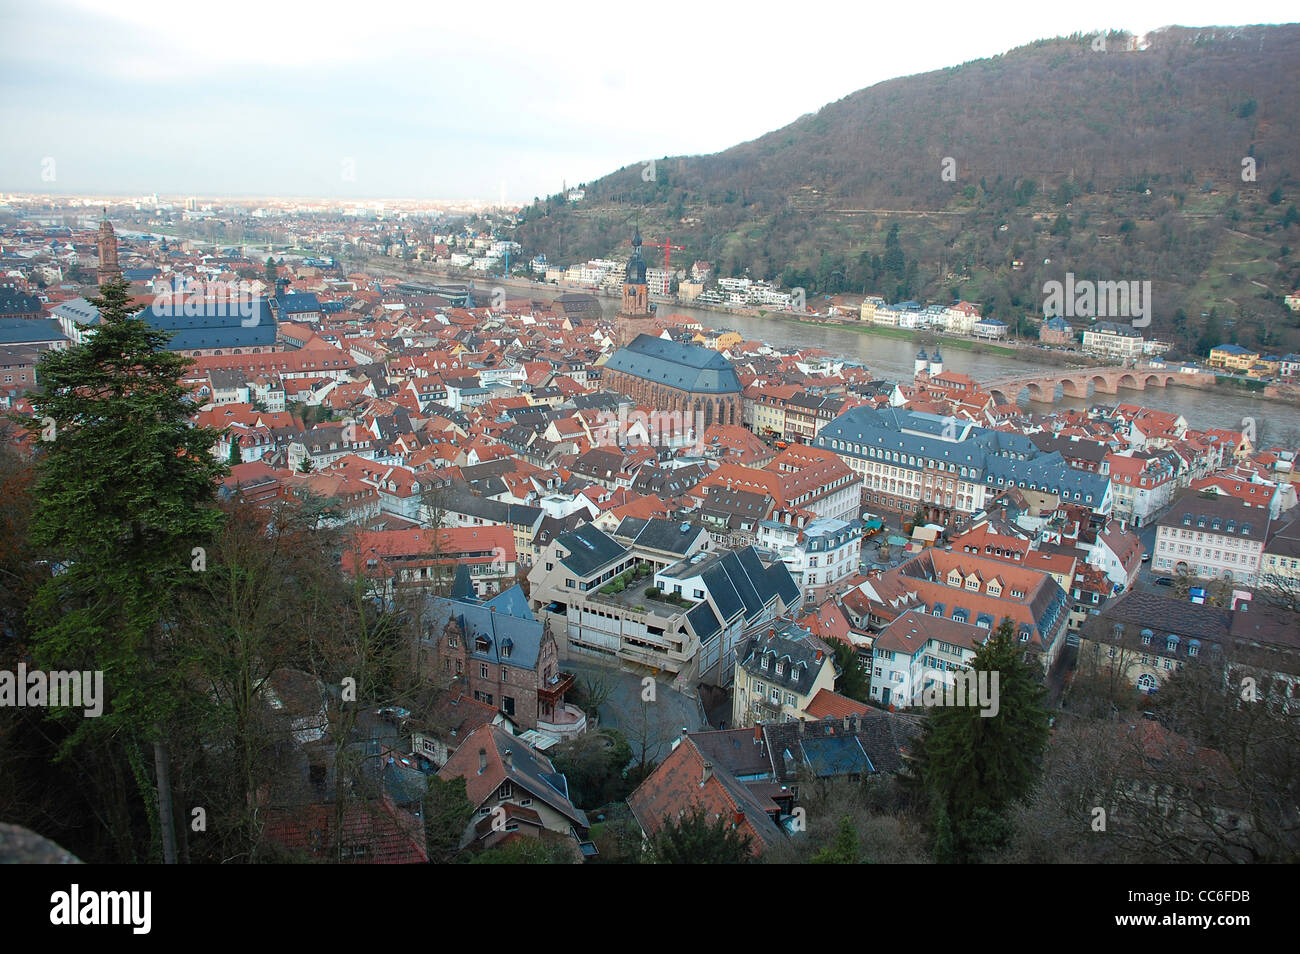 La vieille ville de Heidelberg du château ci-dessus, Allemagne Banque D'Images